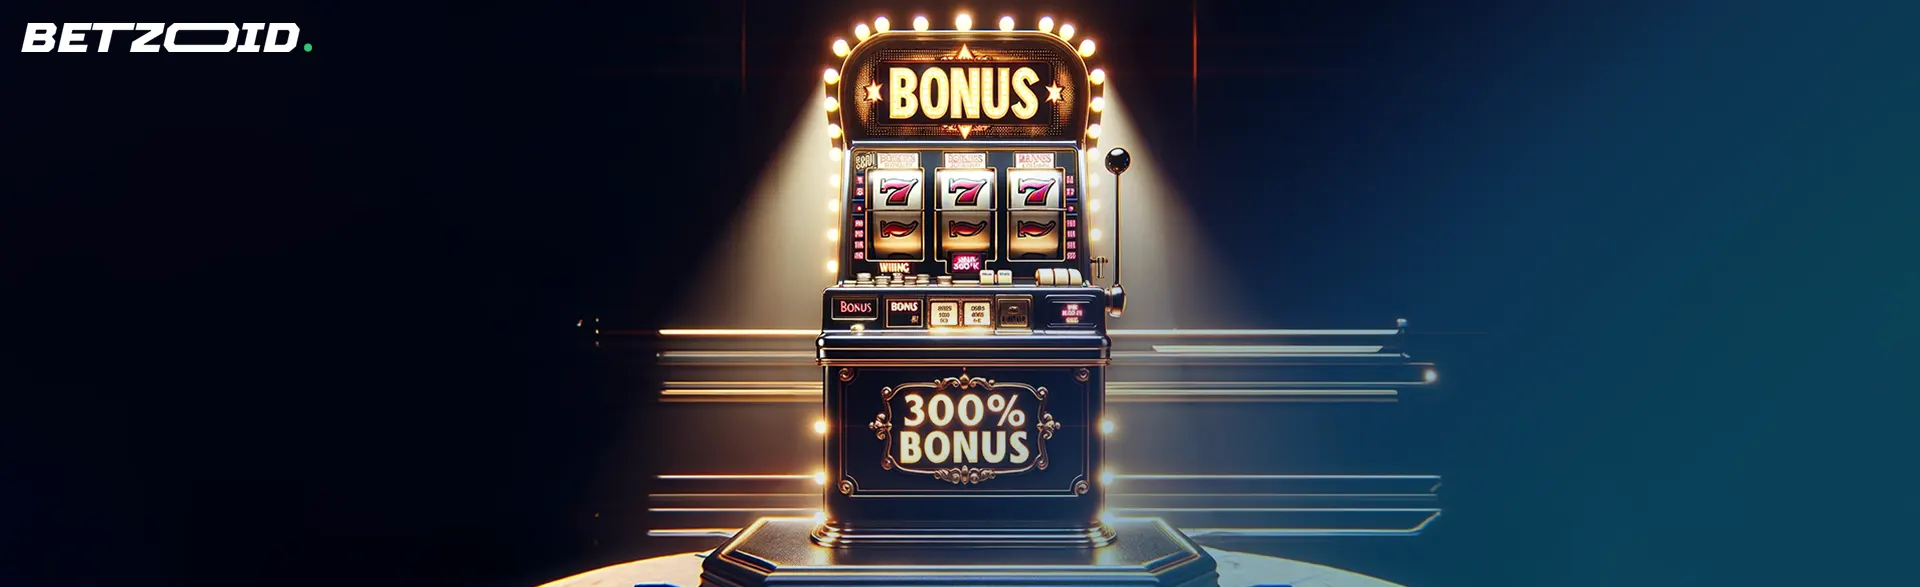 Slot machine in casinos with 300% bonus.